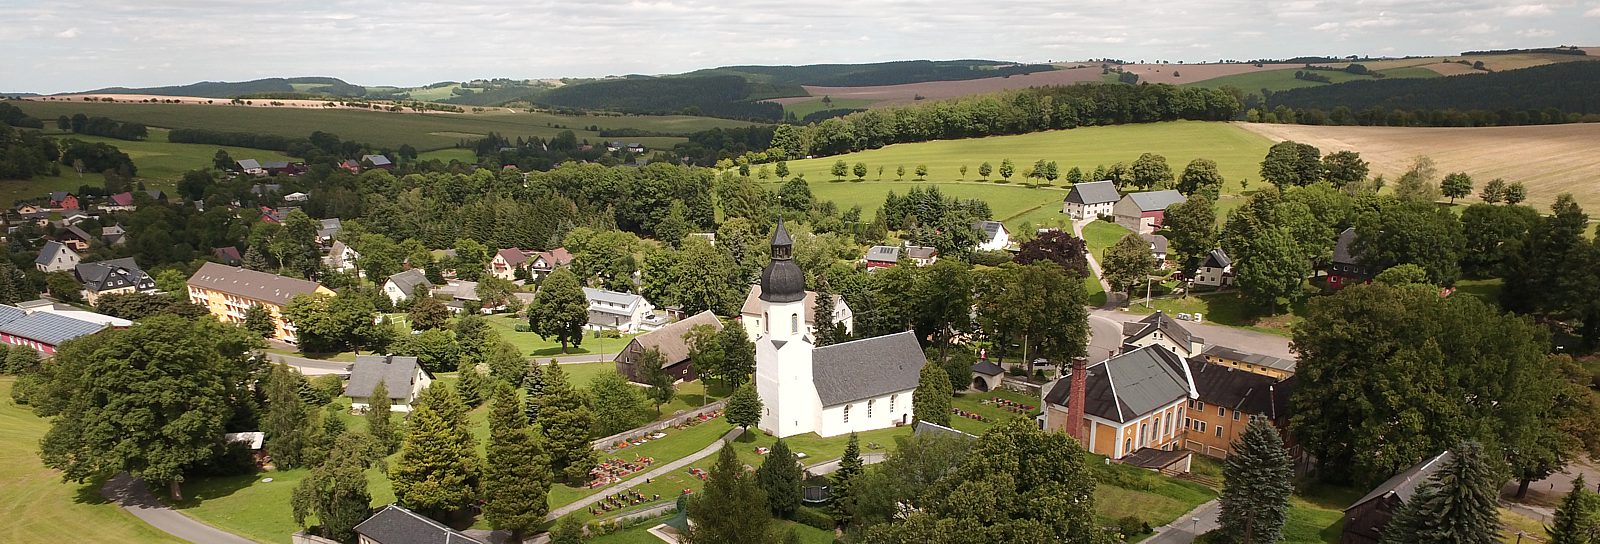 Luftbildaufnahme von Clausnitz